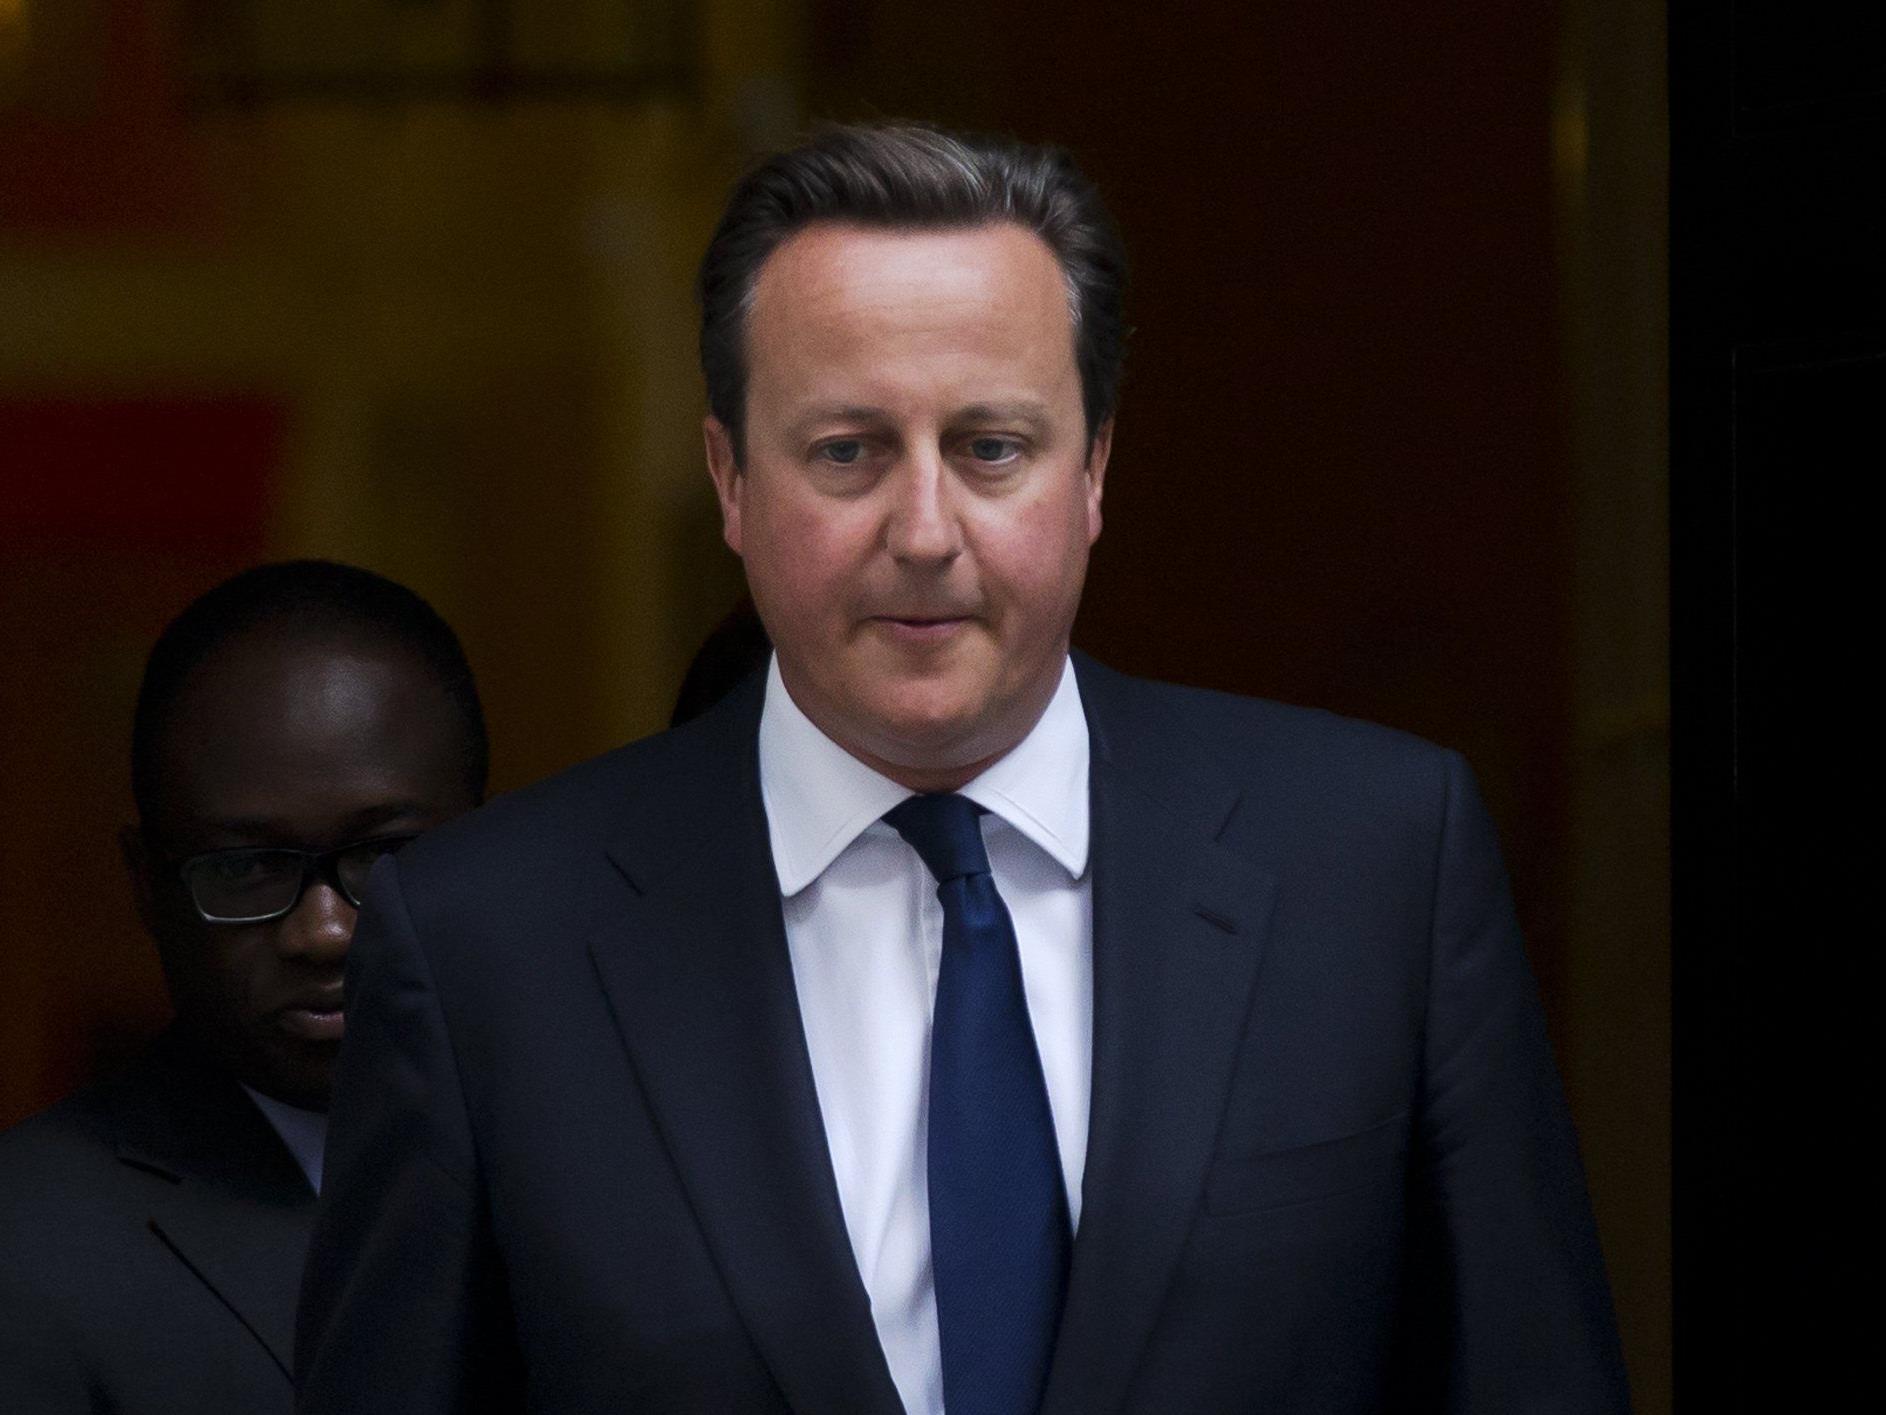 Premierminister David Cameron ist bei der Abstimmung gescheitert - Großbritannien wird nicht in den Syrien-Krieg eingreifen.